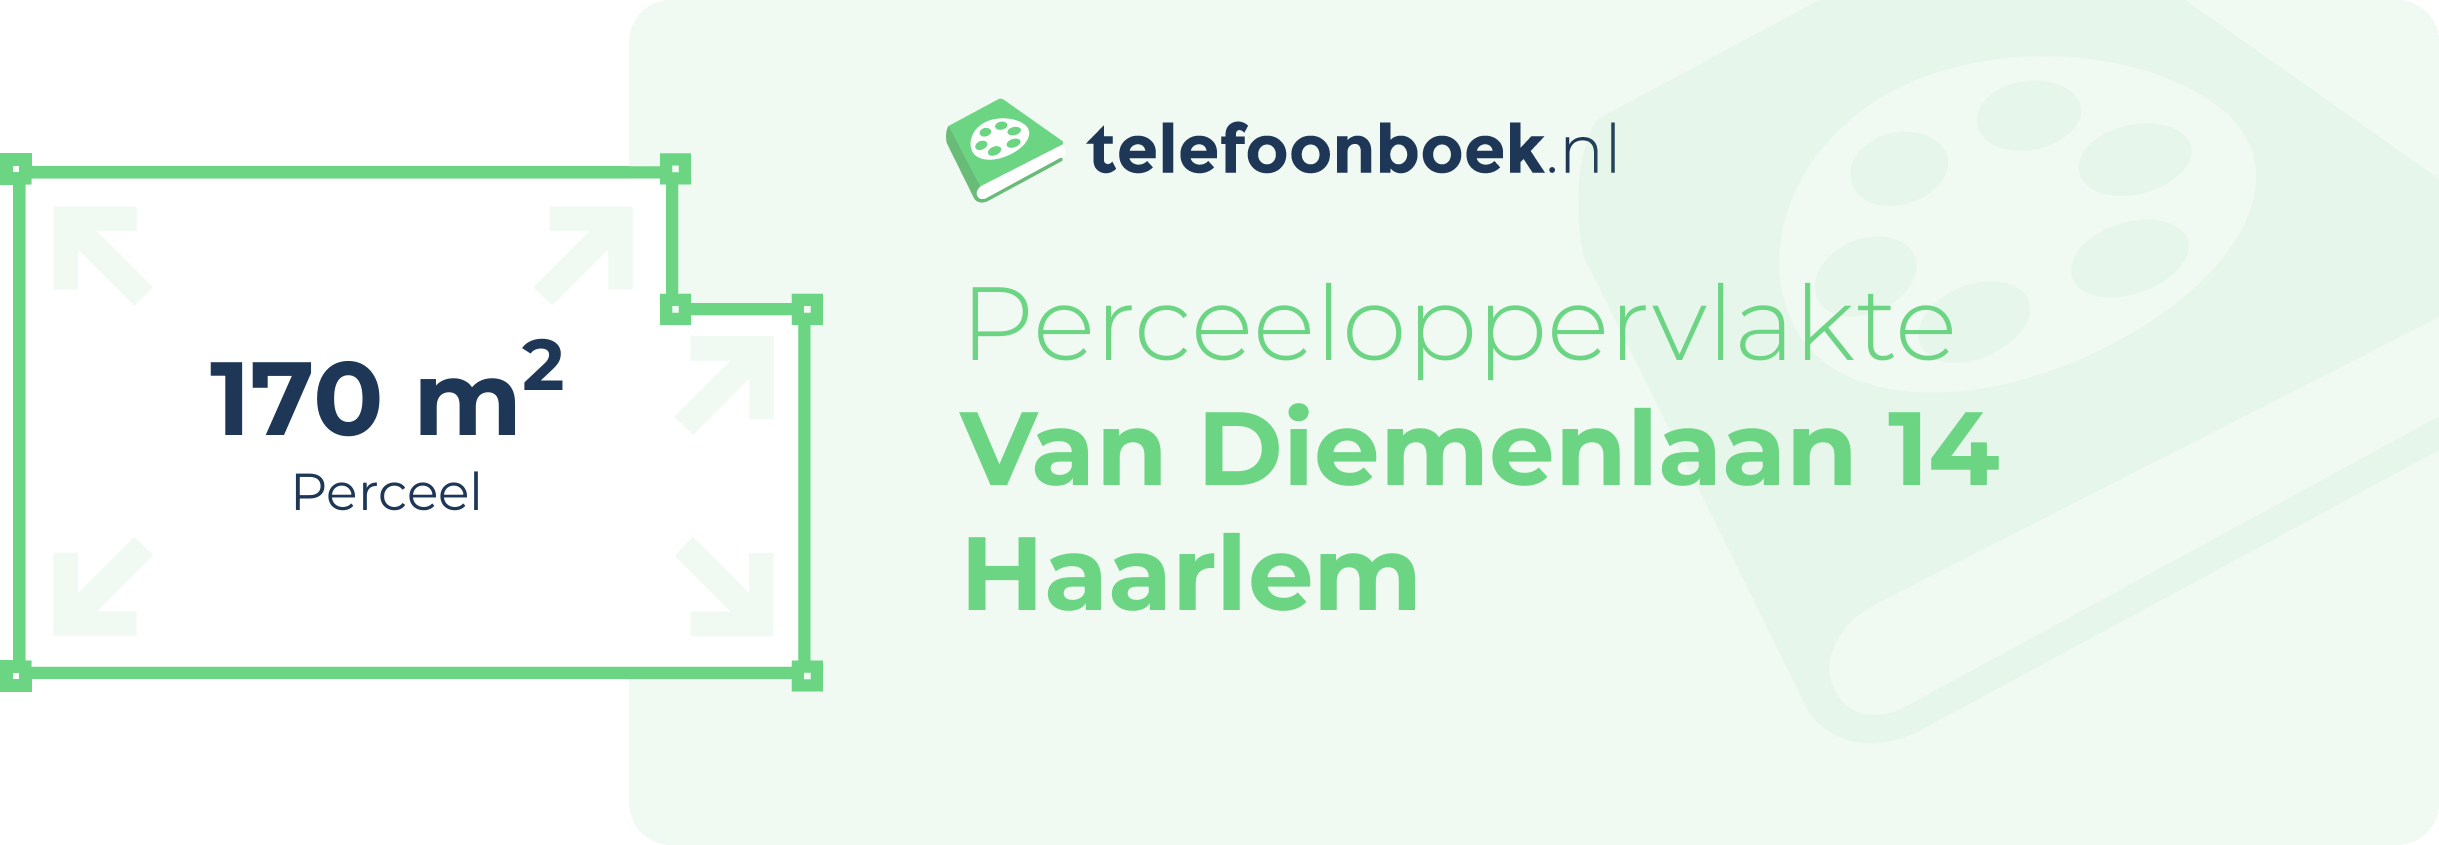 Perceeloppervlakte Van Diemenlaan 14 Haarlem